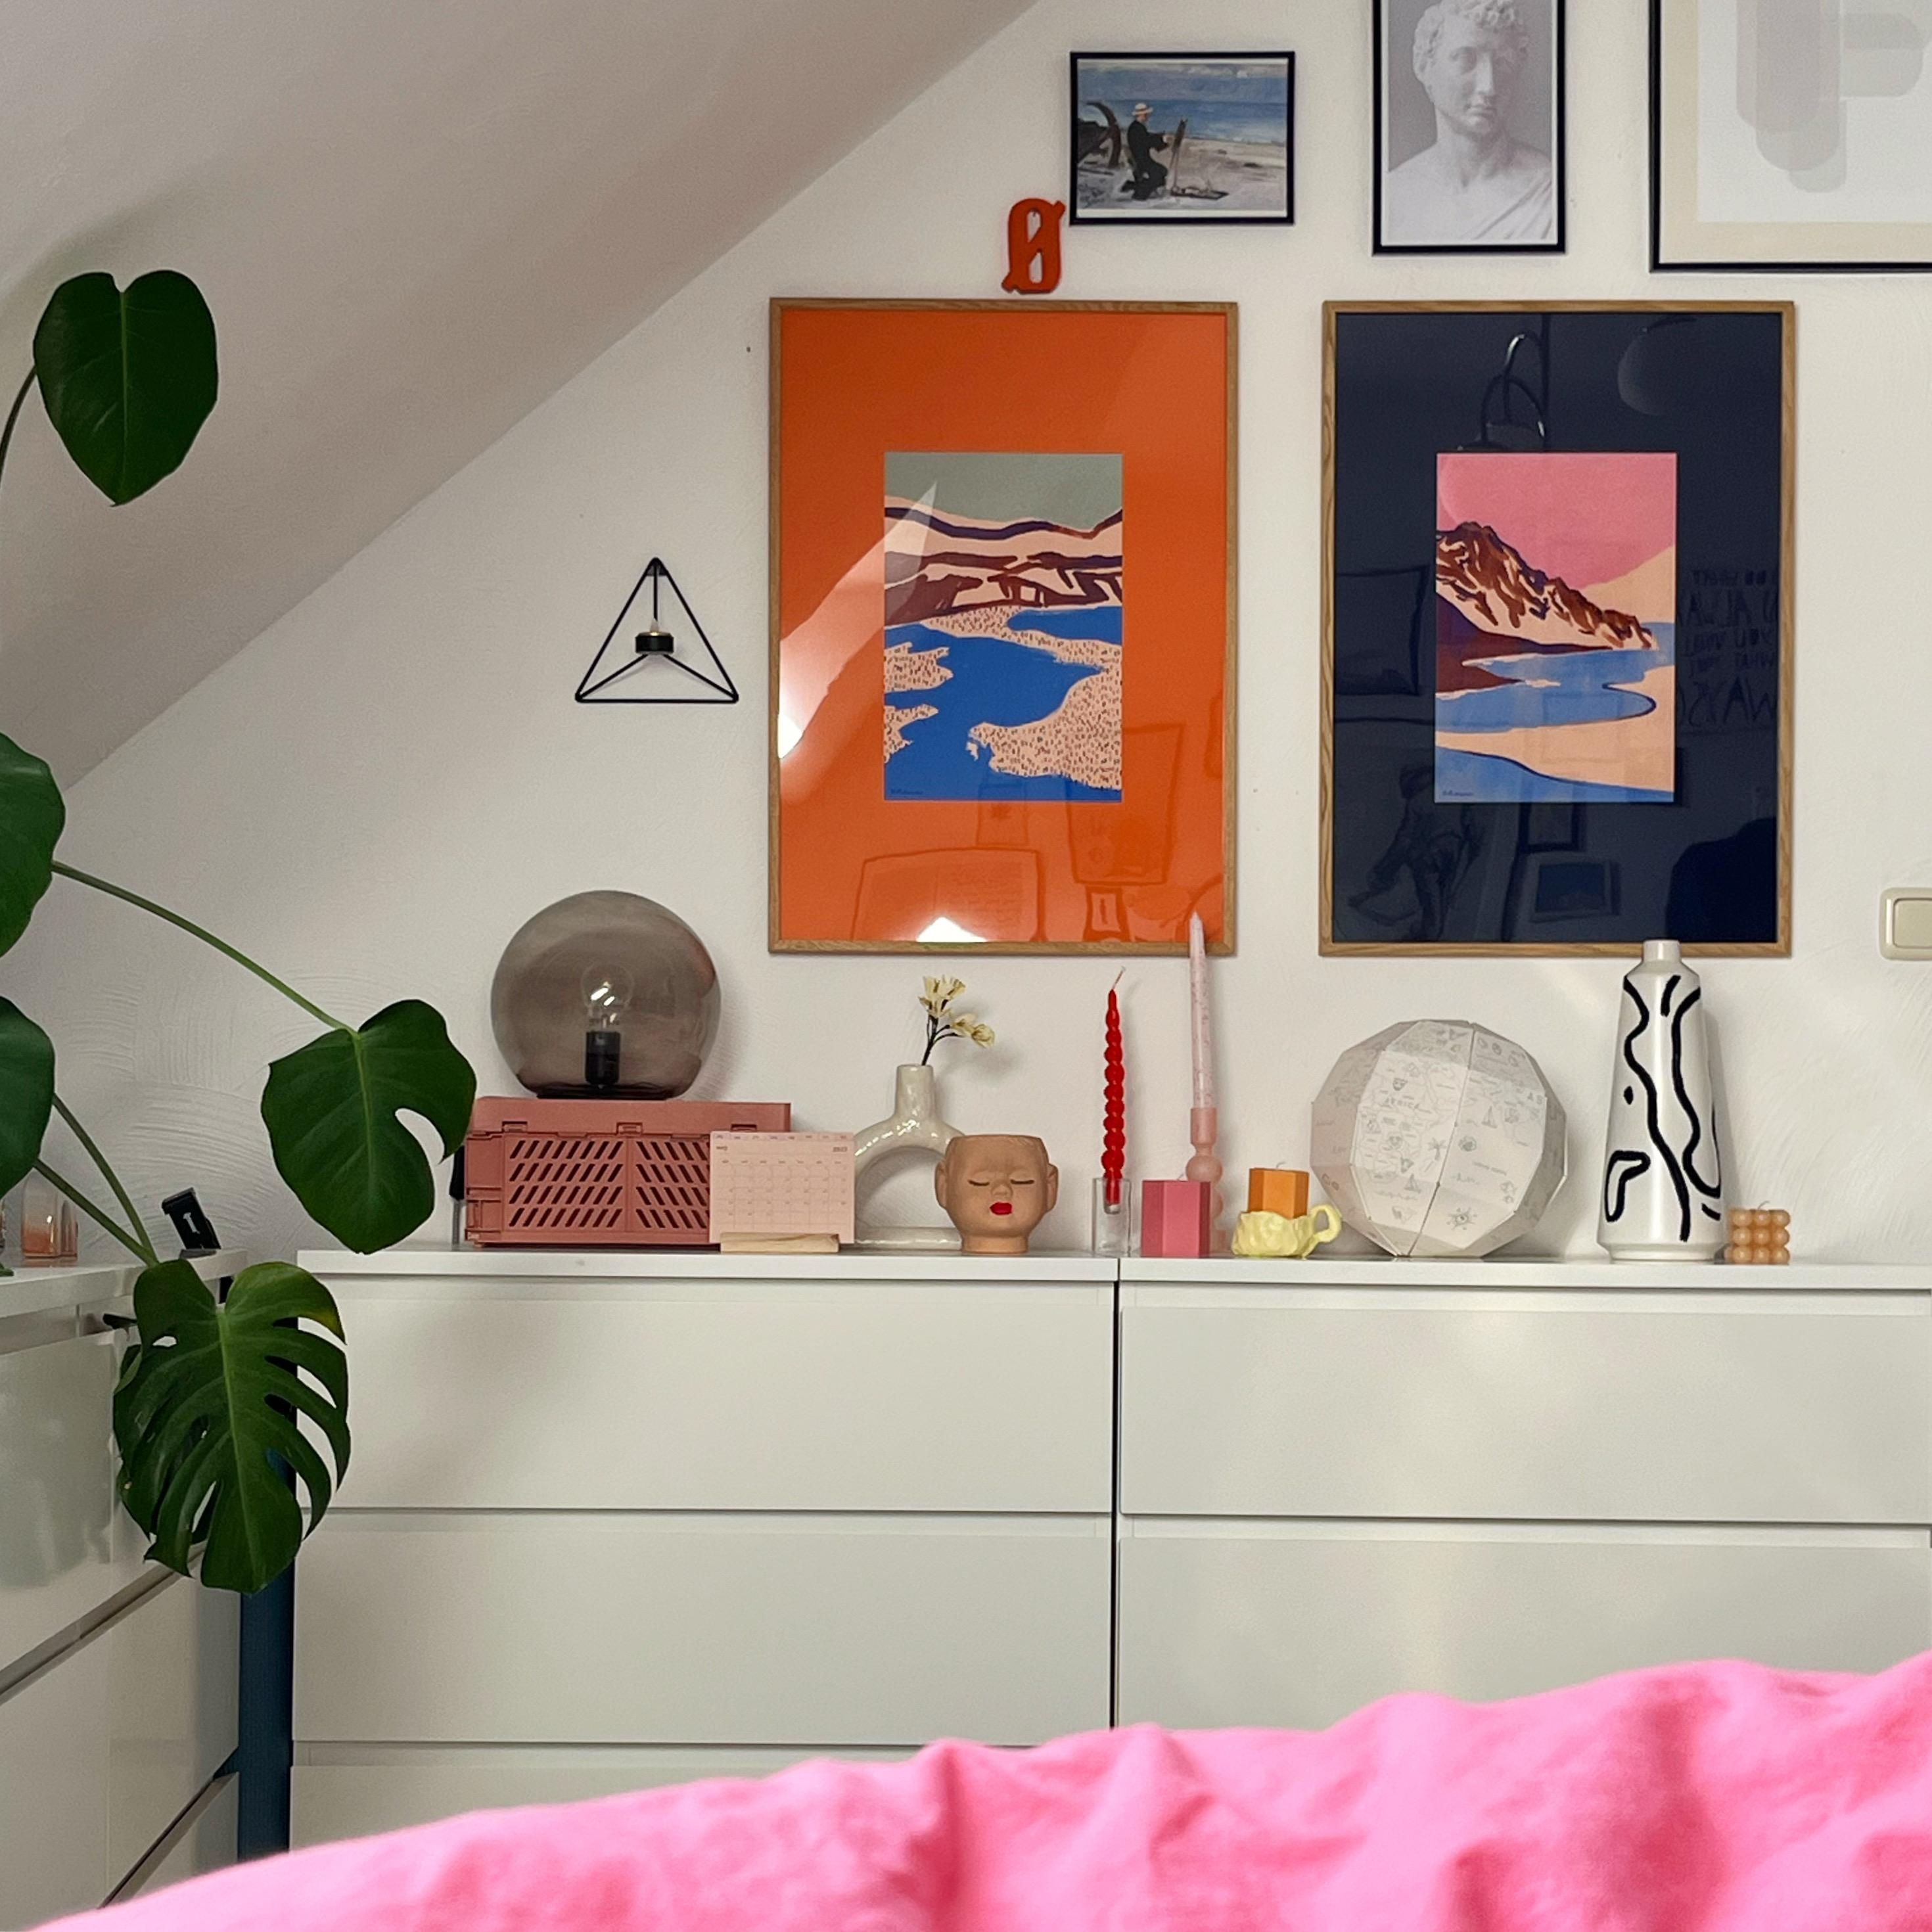 Neue Poster 🧡💙🤗
#wandgestaltung #bilderwand #bildergalerie #walldecor #couchstyle #farbenfrohwohnen #poster